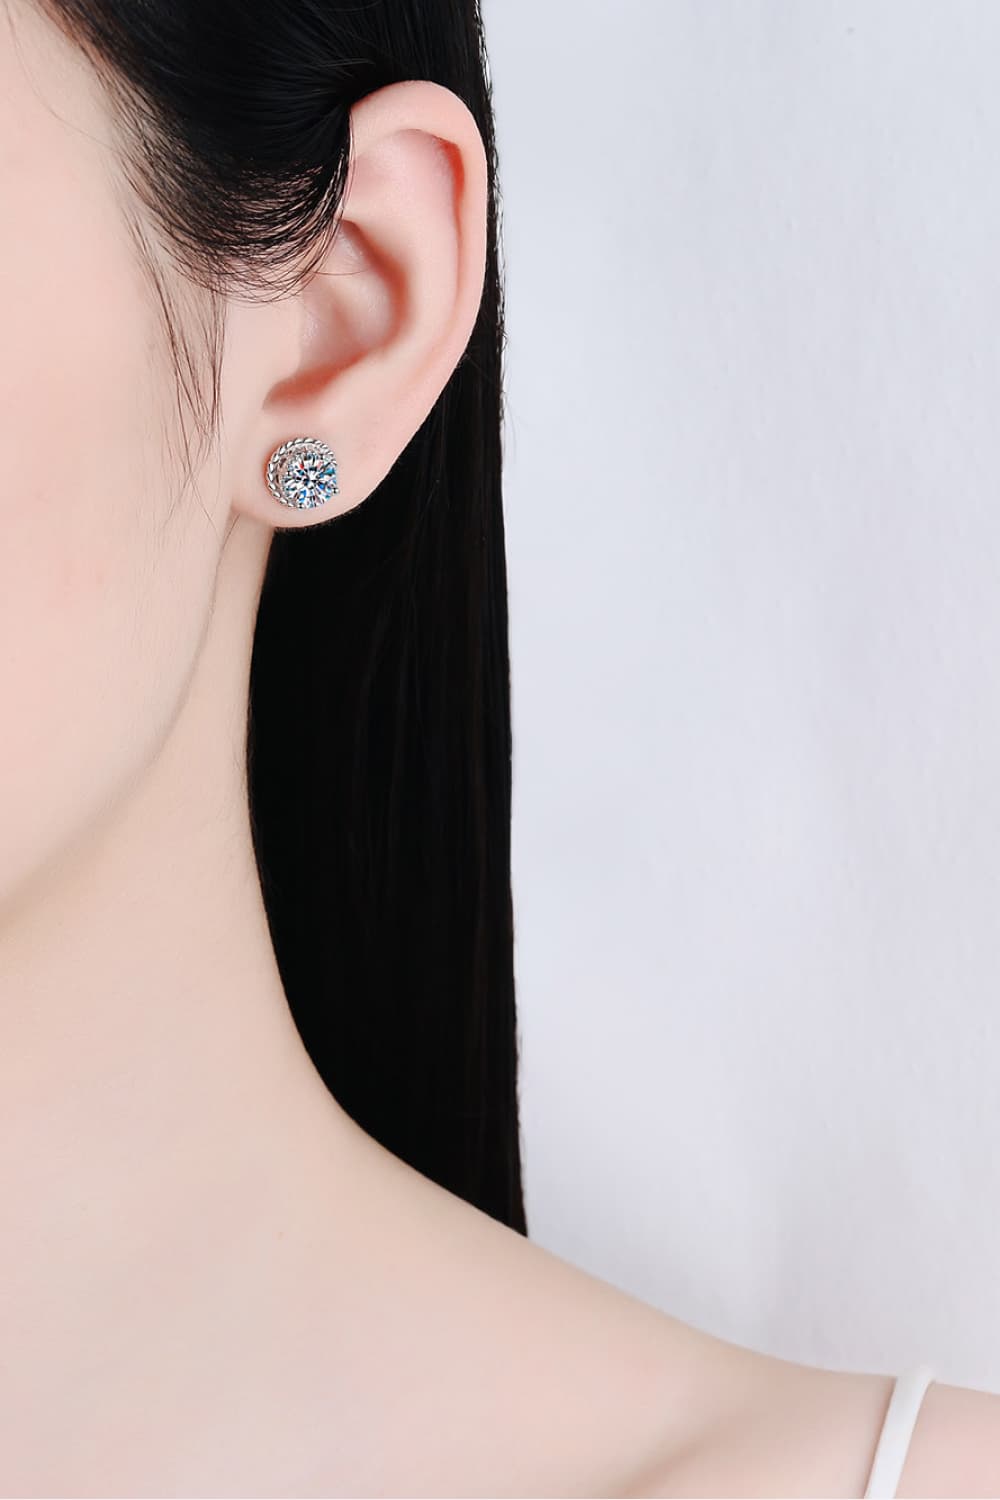 2 Carat Moissanite 925 Sterling Silver Stud Earrings - bertofonsi